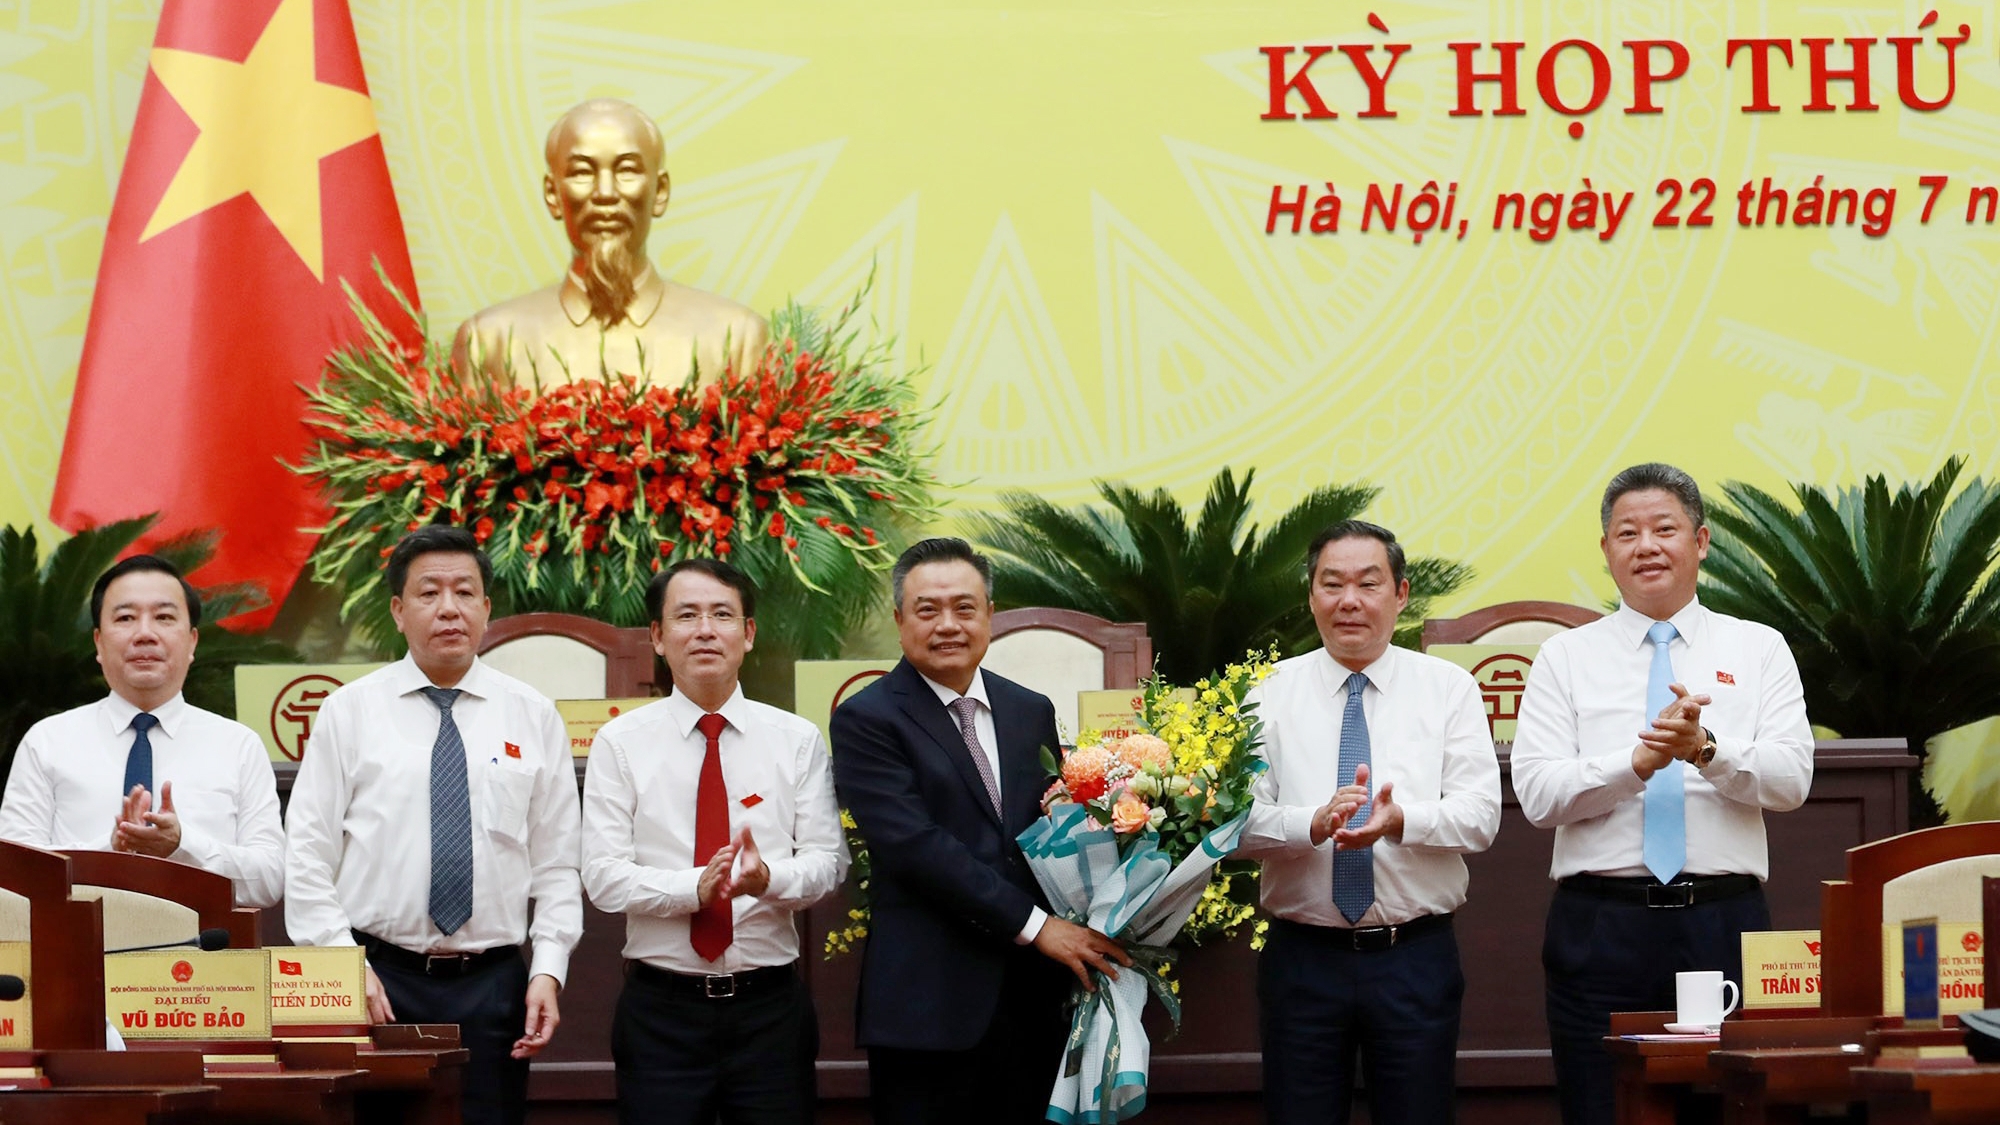 Phân công nhiệm vụ Chủ tịch Trần Sỹ Thanh và 6 Phó Chủ tịch Hà Nội